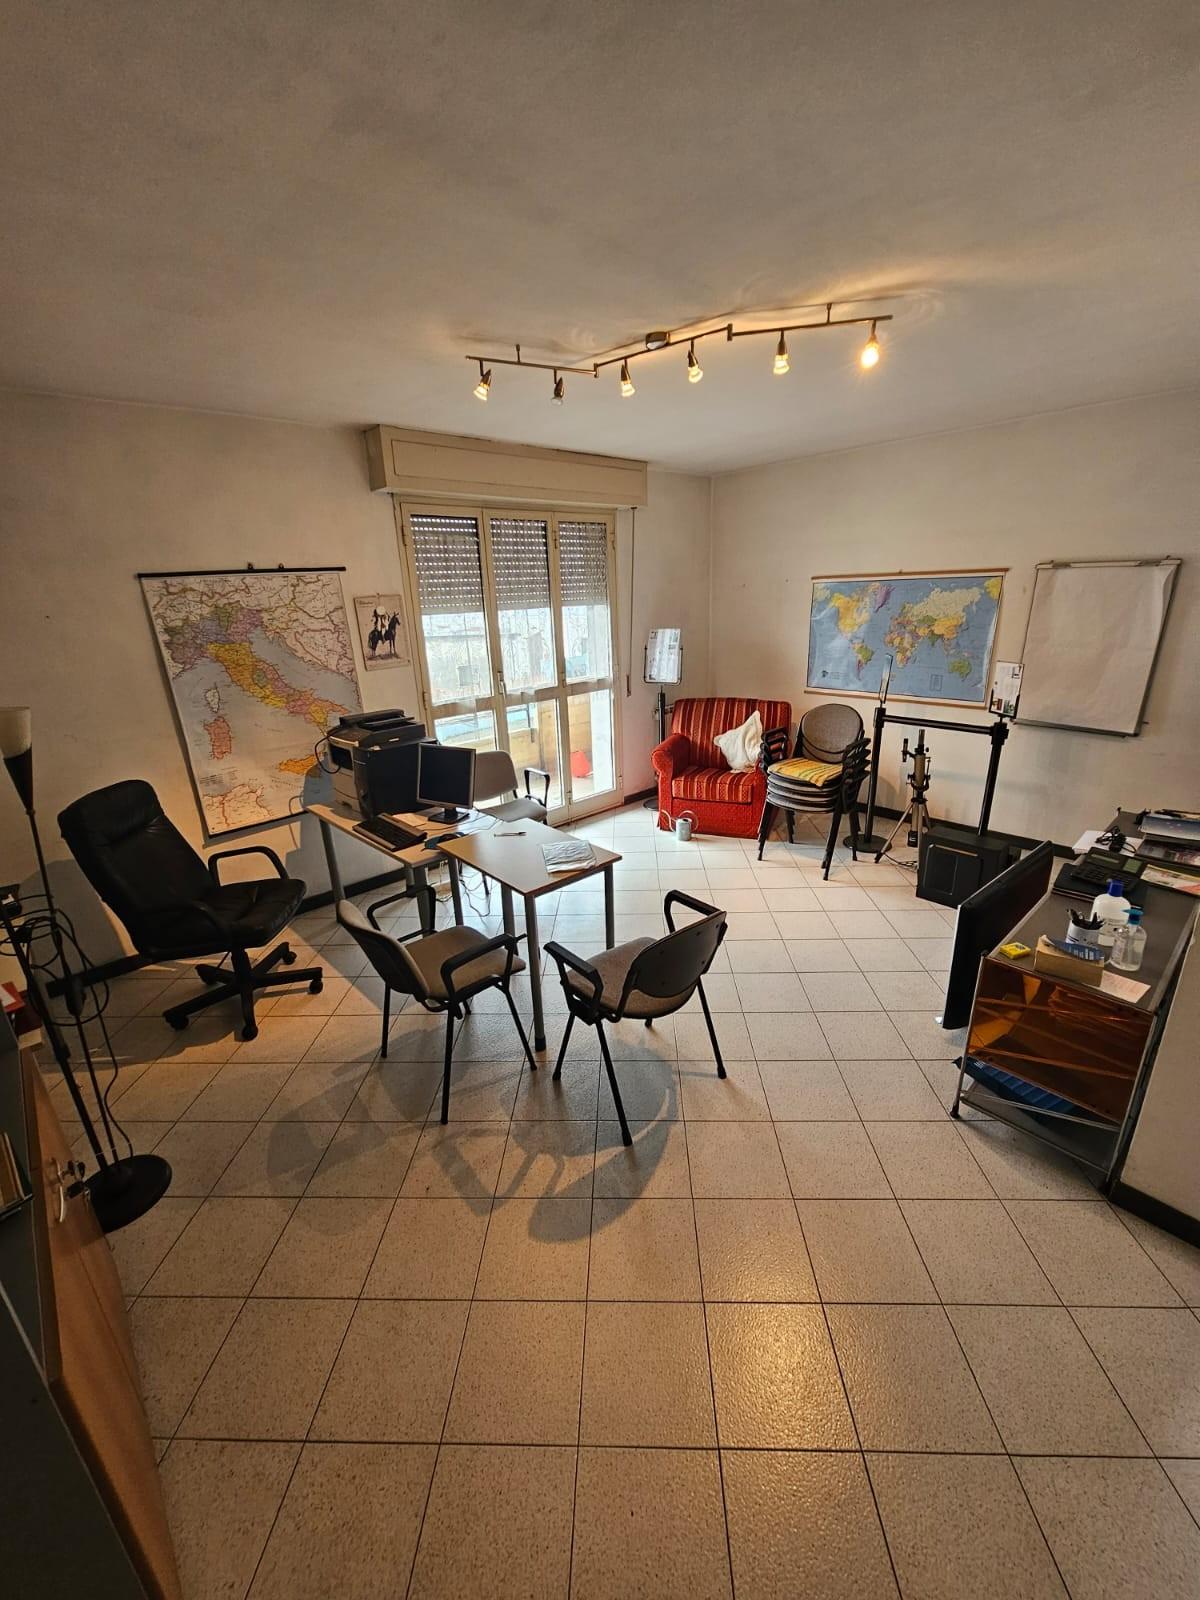 Ufficio / Studio in vendita a Carrara, 2 locali, prezzo € 100.000 | PortaleAgenzieImmobiliari.it